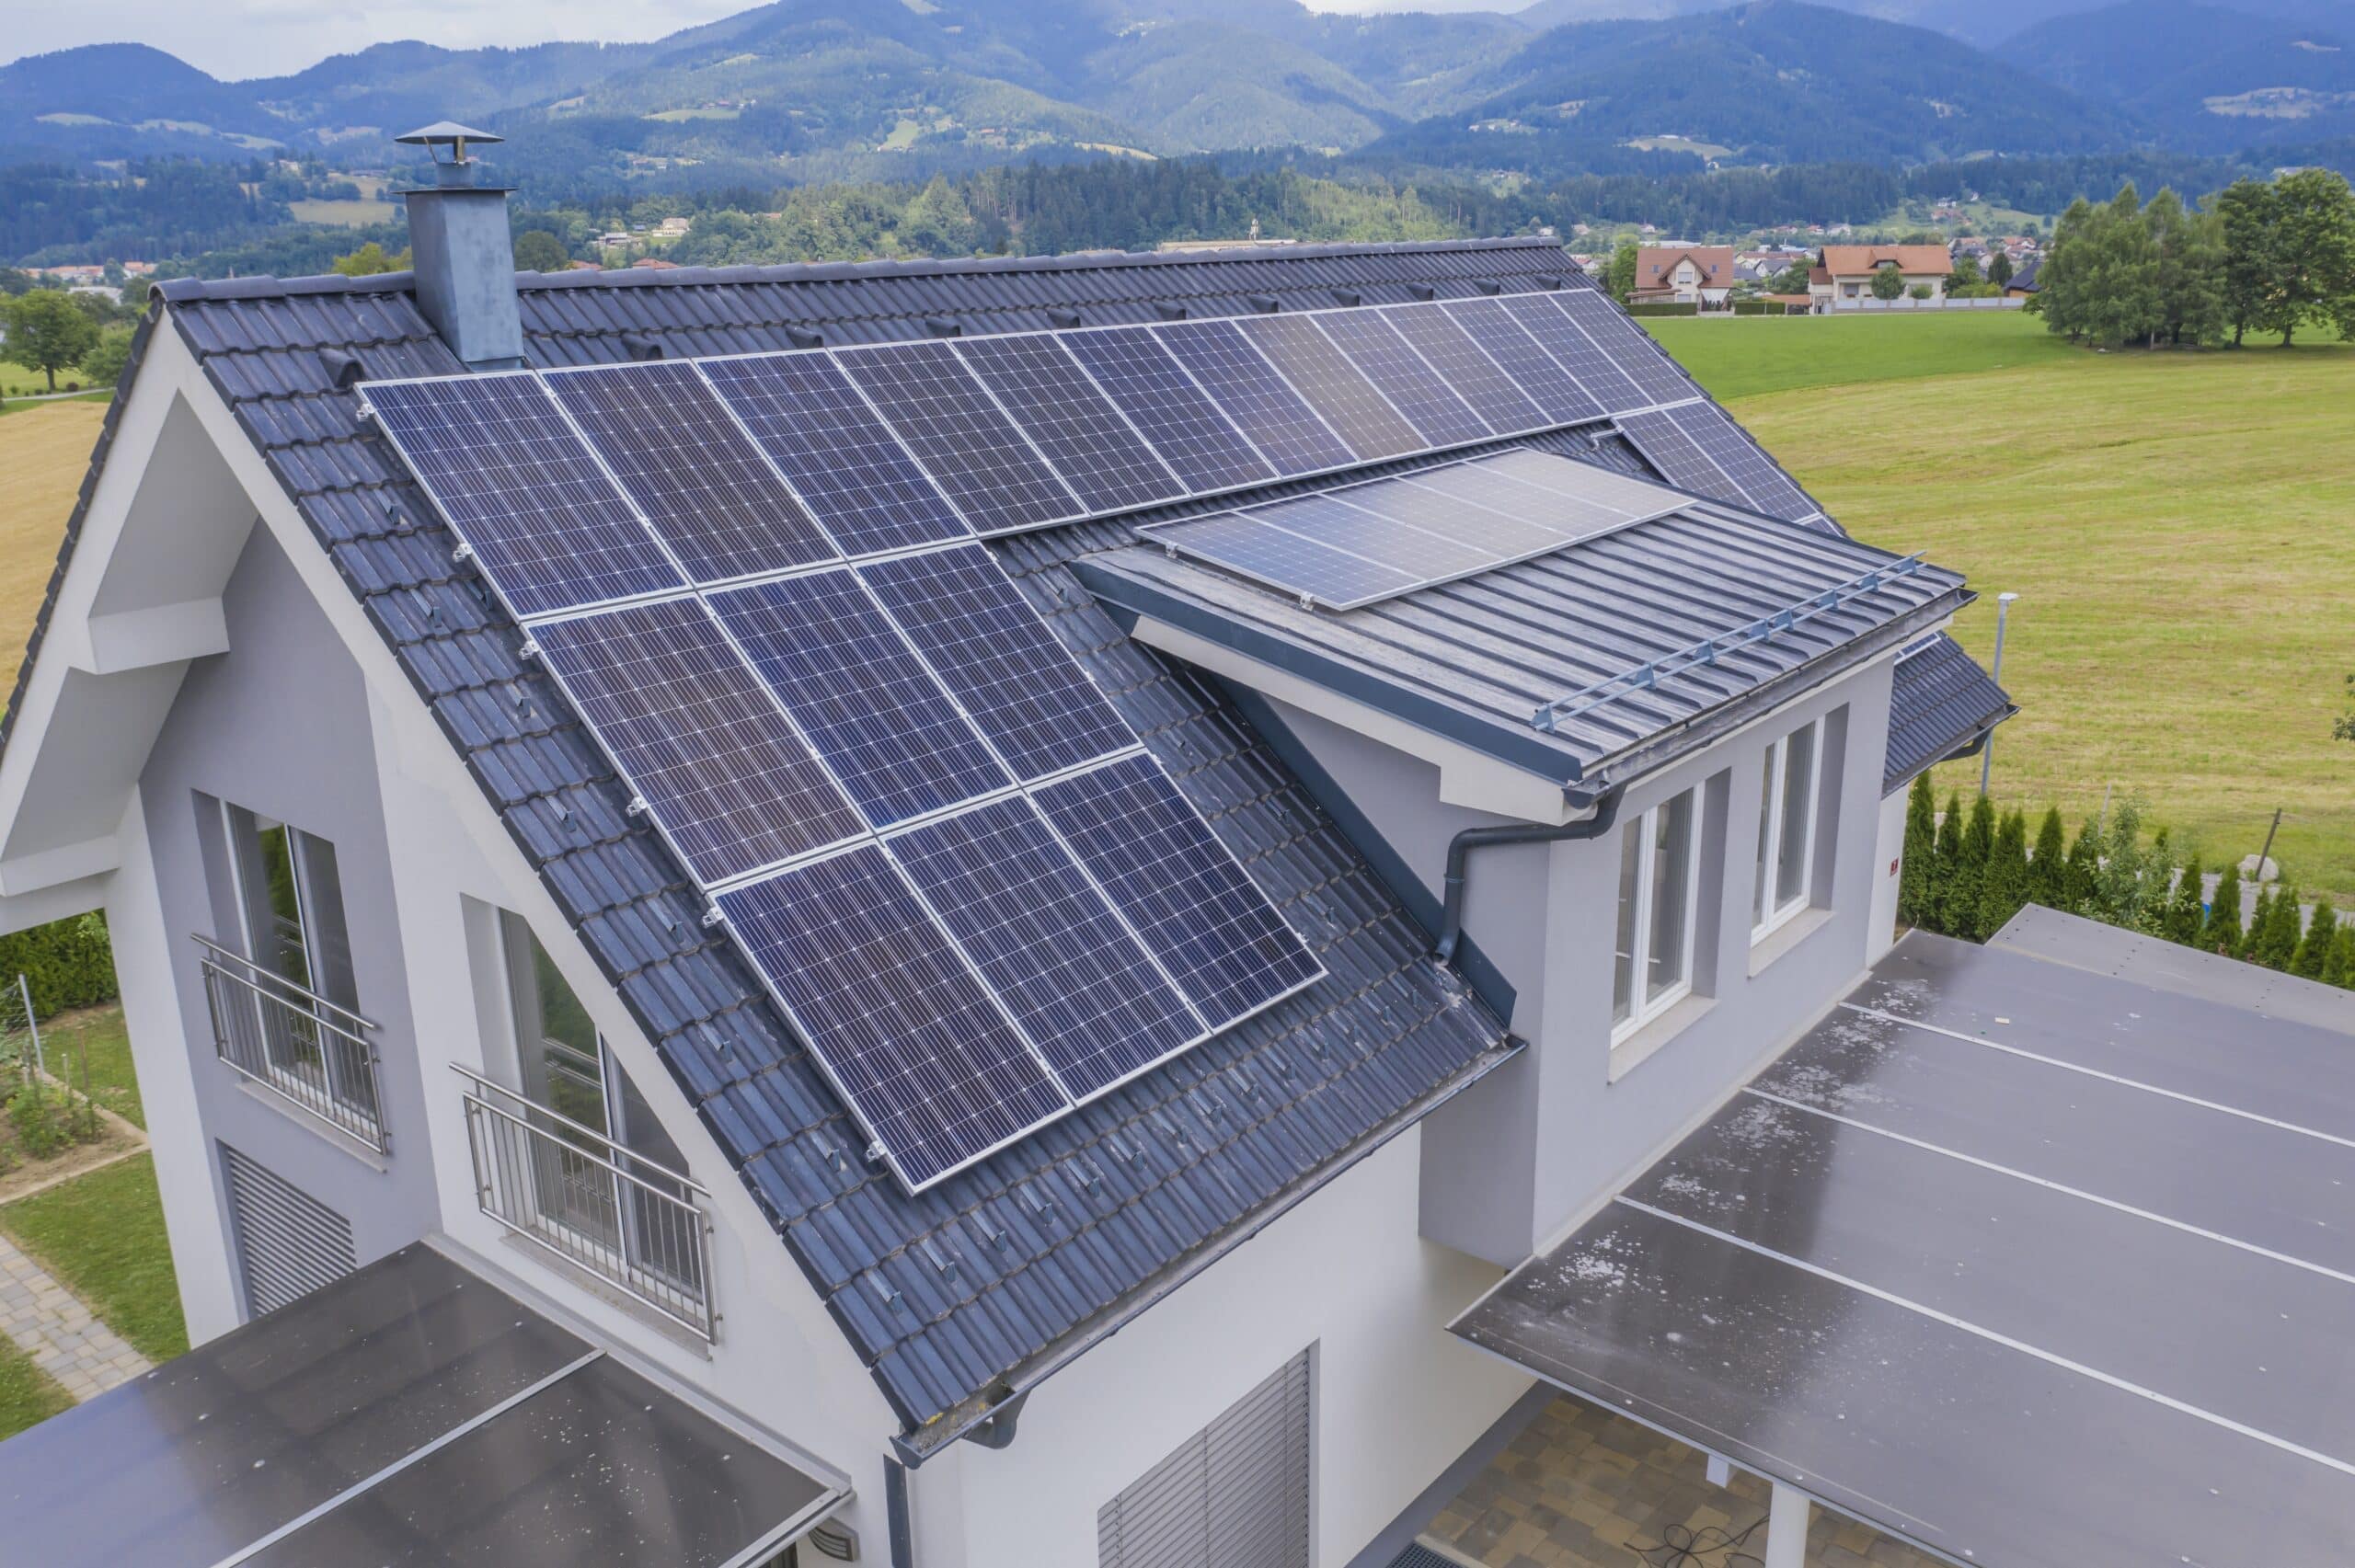 Instalación de placas solares: Guía completa para un hogar sostenible